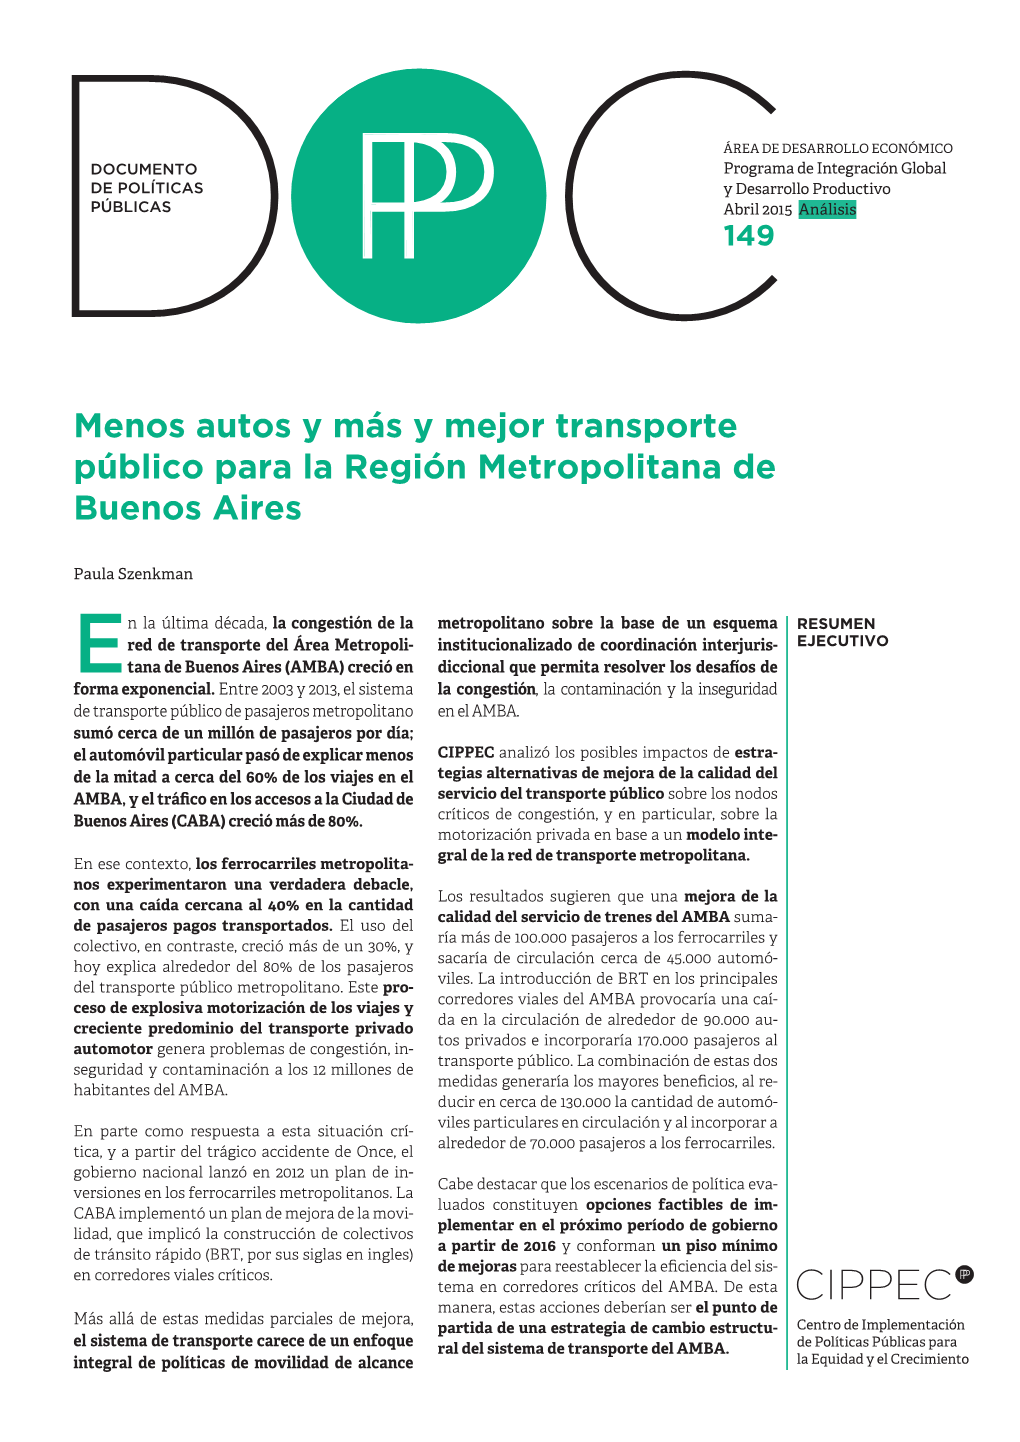 Menos Autos Y Más Y Mejor Transporte Público Para La Región Metropolitana De Buenos Aires